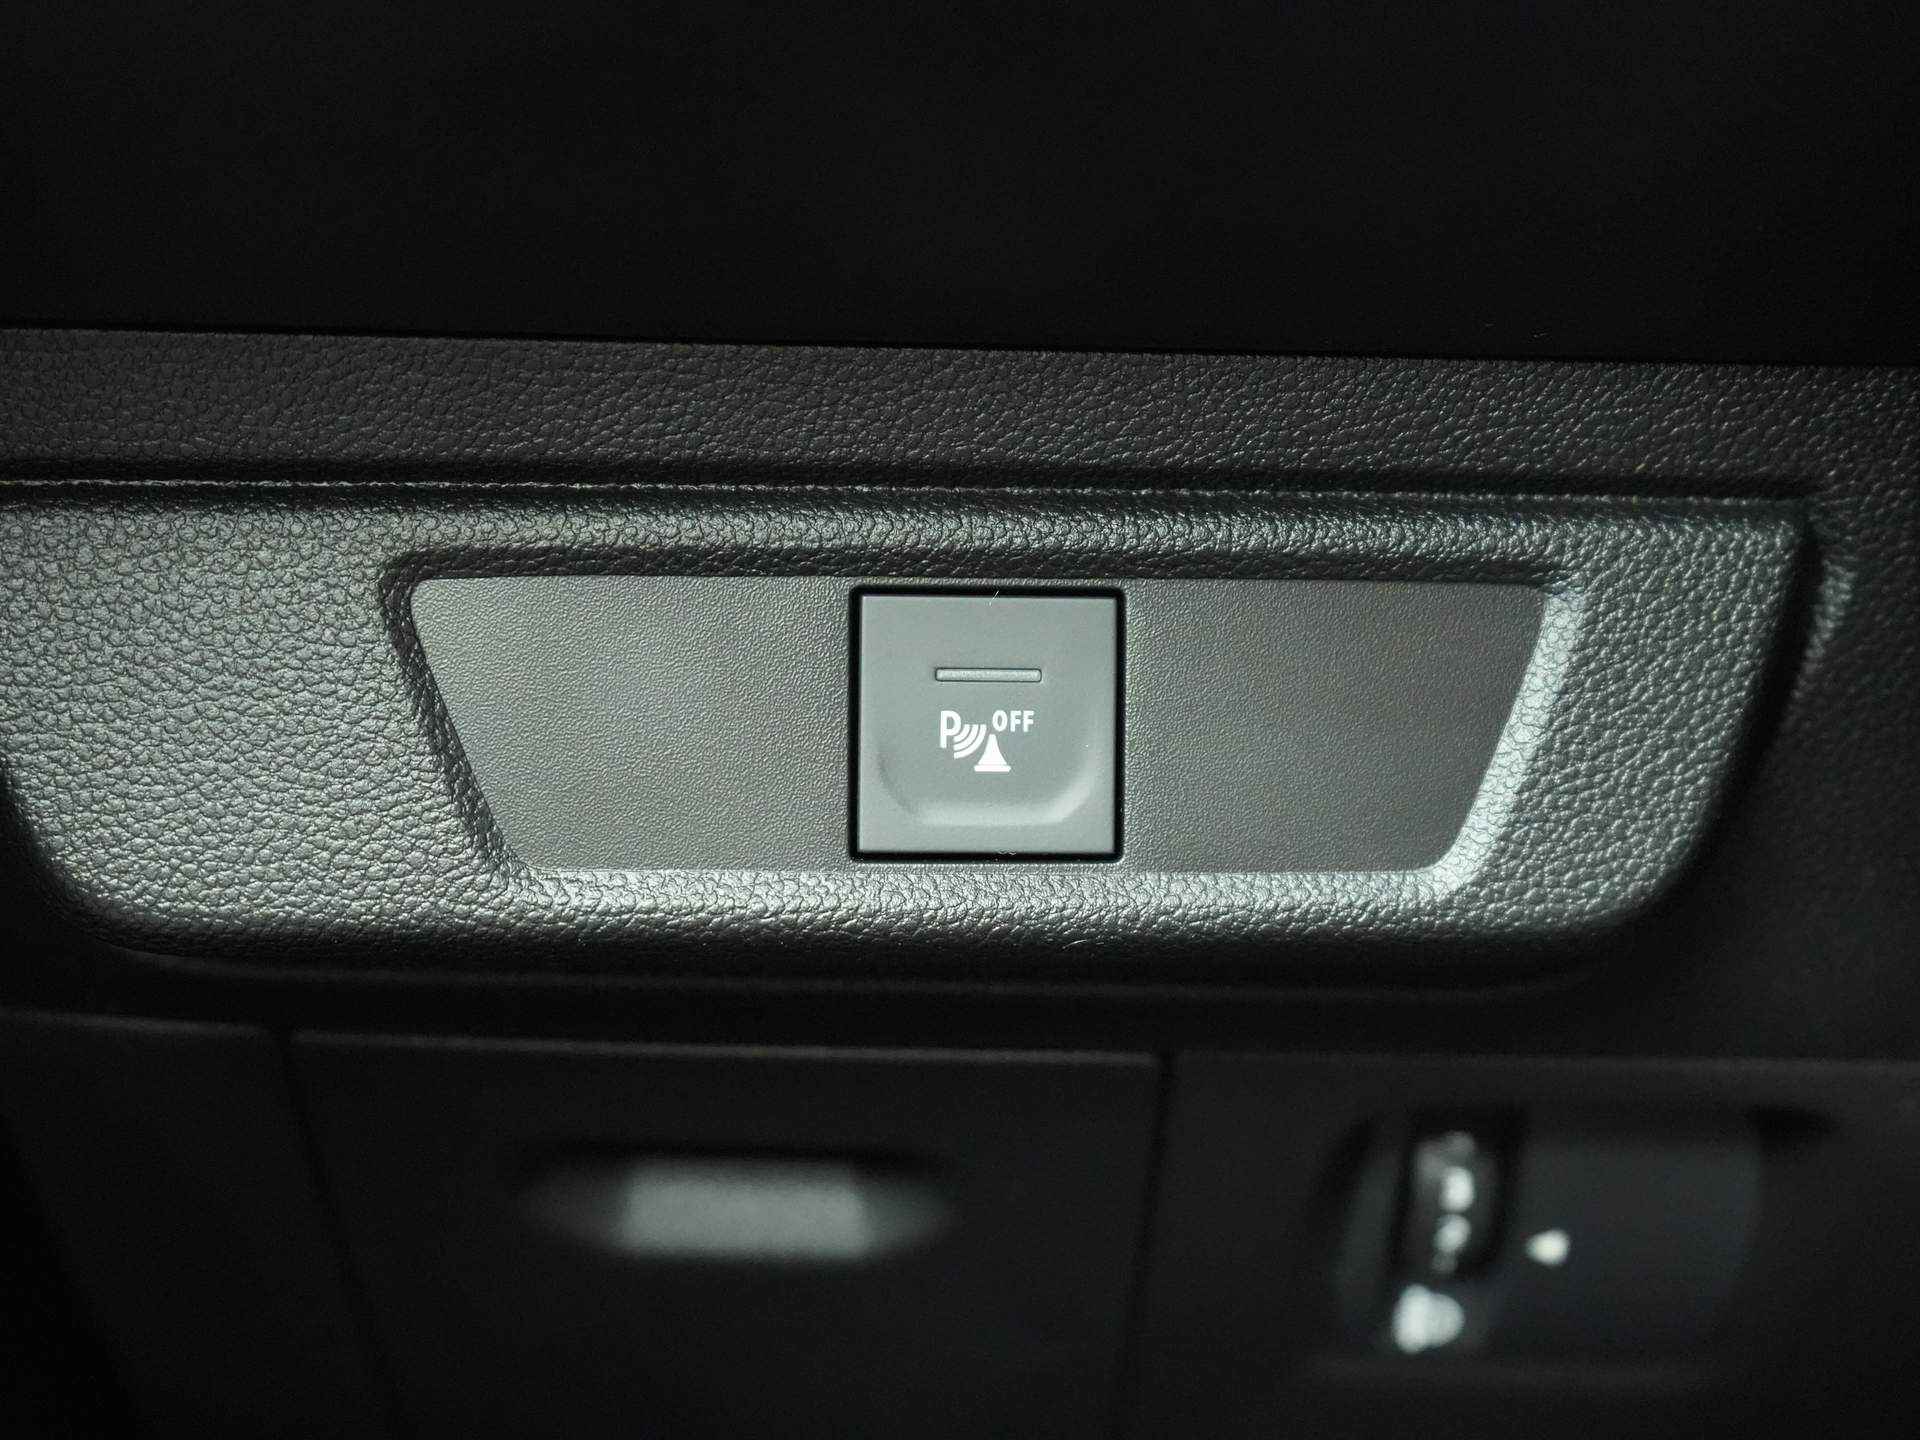 Dacia SANDERO Stepway 1.0 TCe 90 Comfort - Parkeersensoren achter- - 19/24